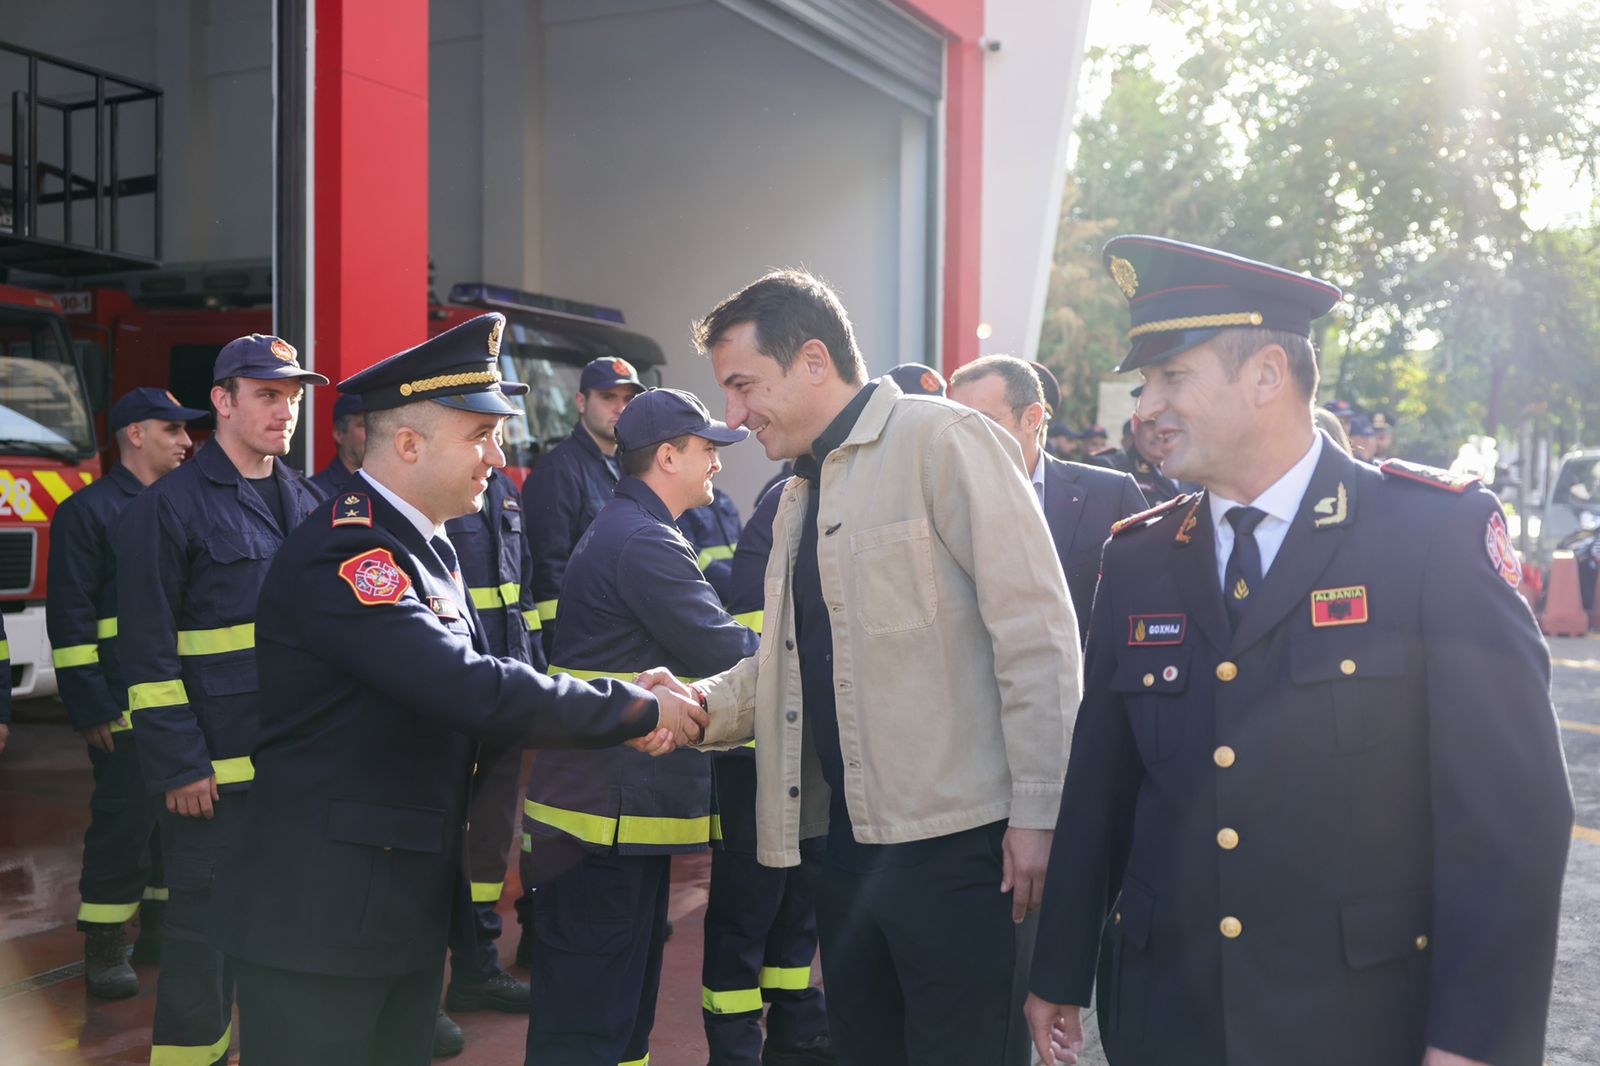 Përurohet stacioni i ri zjarrfikës në Tiranë, Veliaj: Ne flasim me punët që bëjmë; Pedagogët që protestojnë, të marrin shembull nga zjarrfikësit